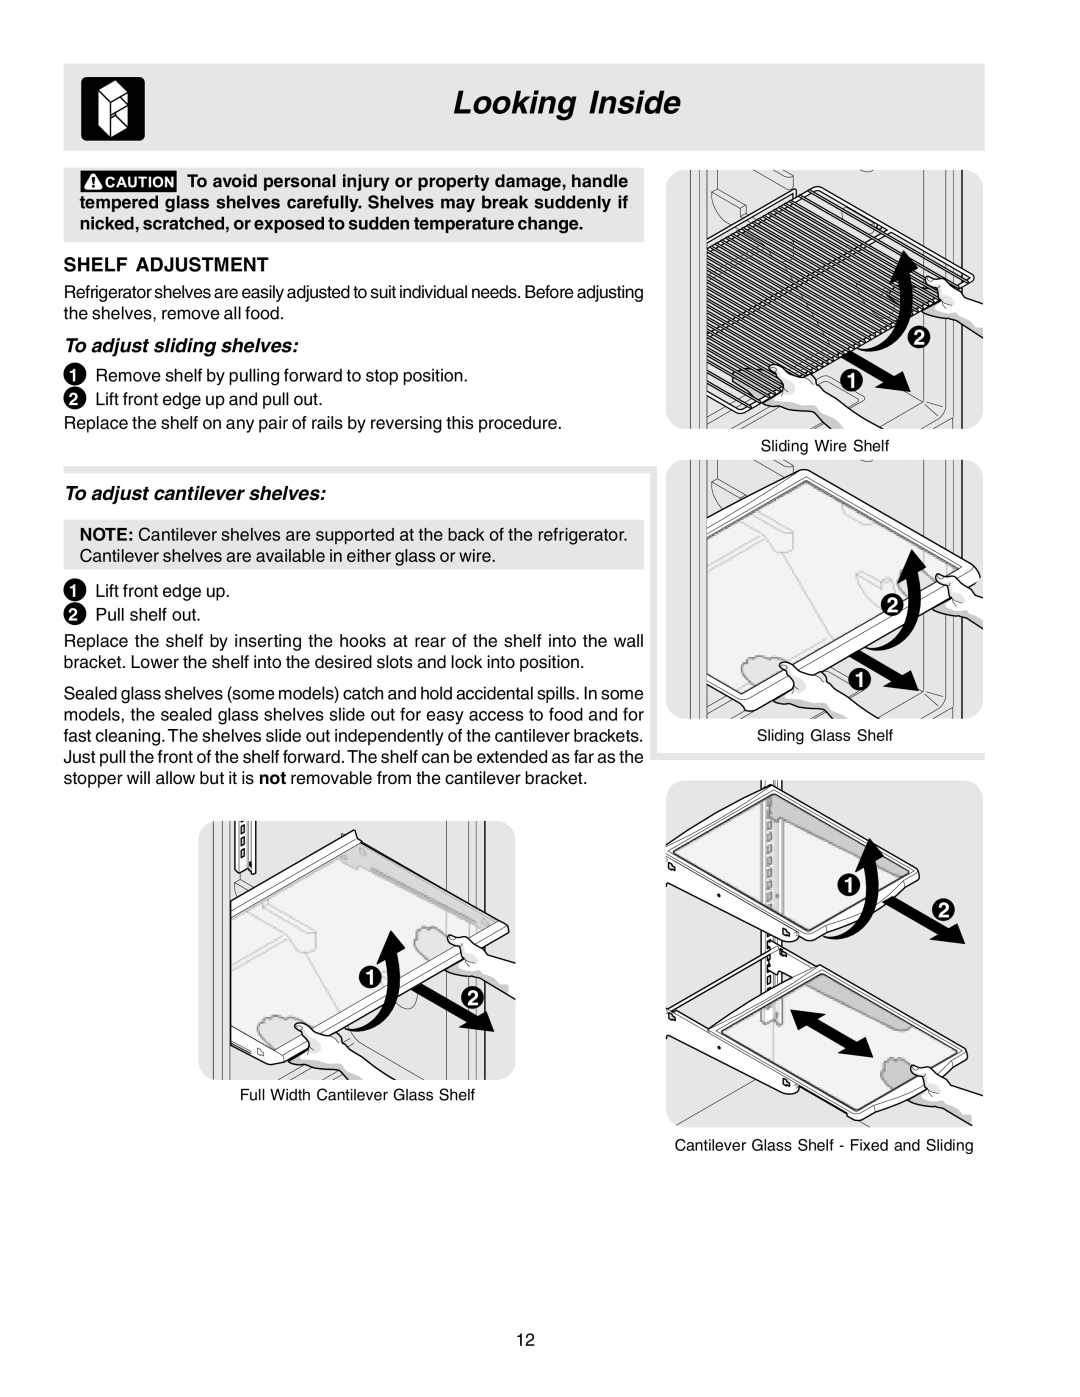 Crosley 241559900 manual Looking Inside, Shelf Adjustment, To adjust sliding shelves, To adjust cantilever shelves 